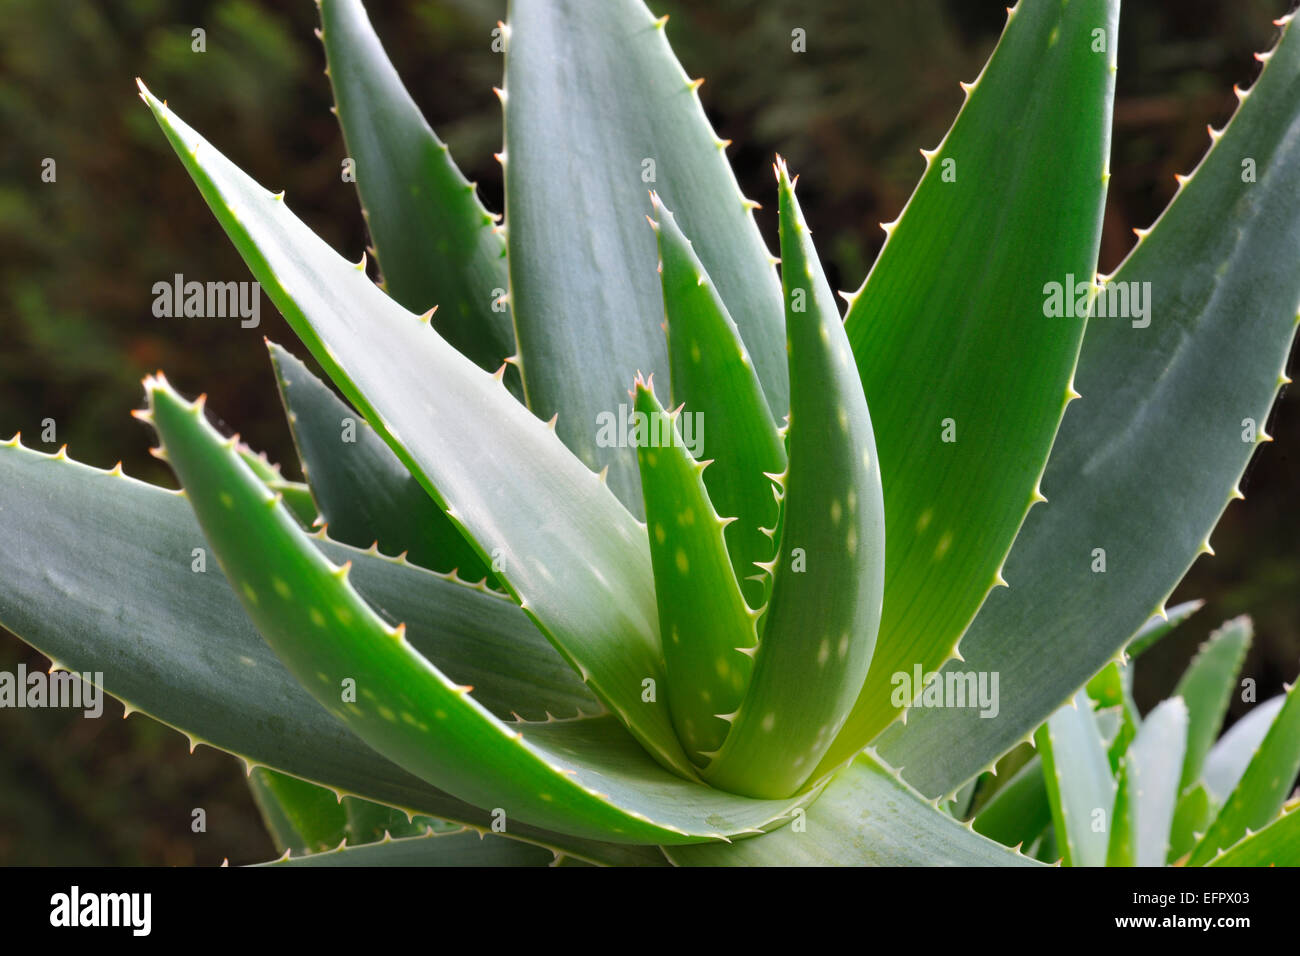 Planta de aloe vera e imágenes de alta resolución - Alamy